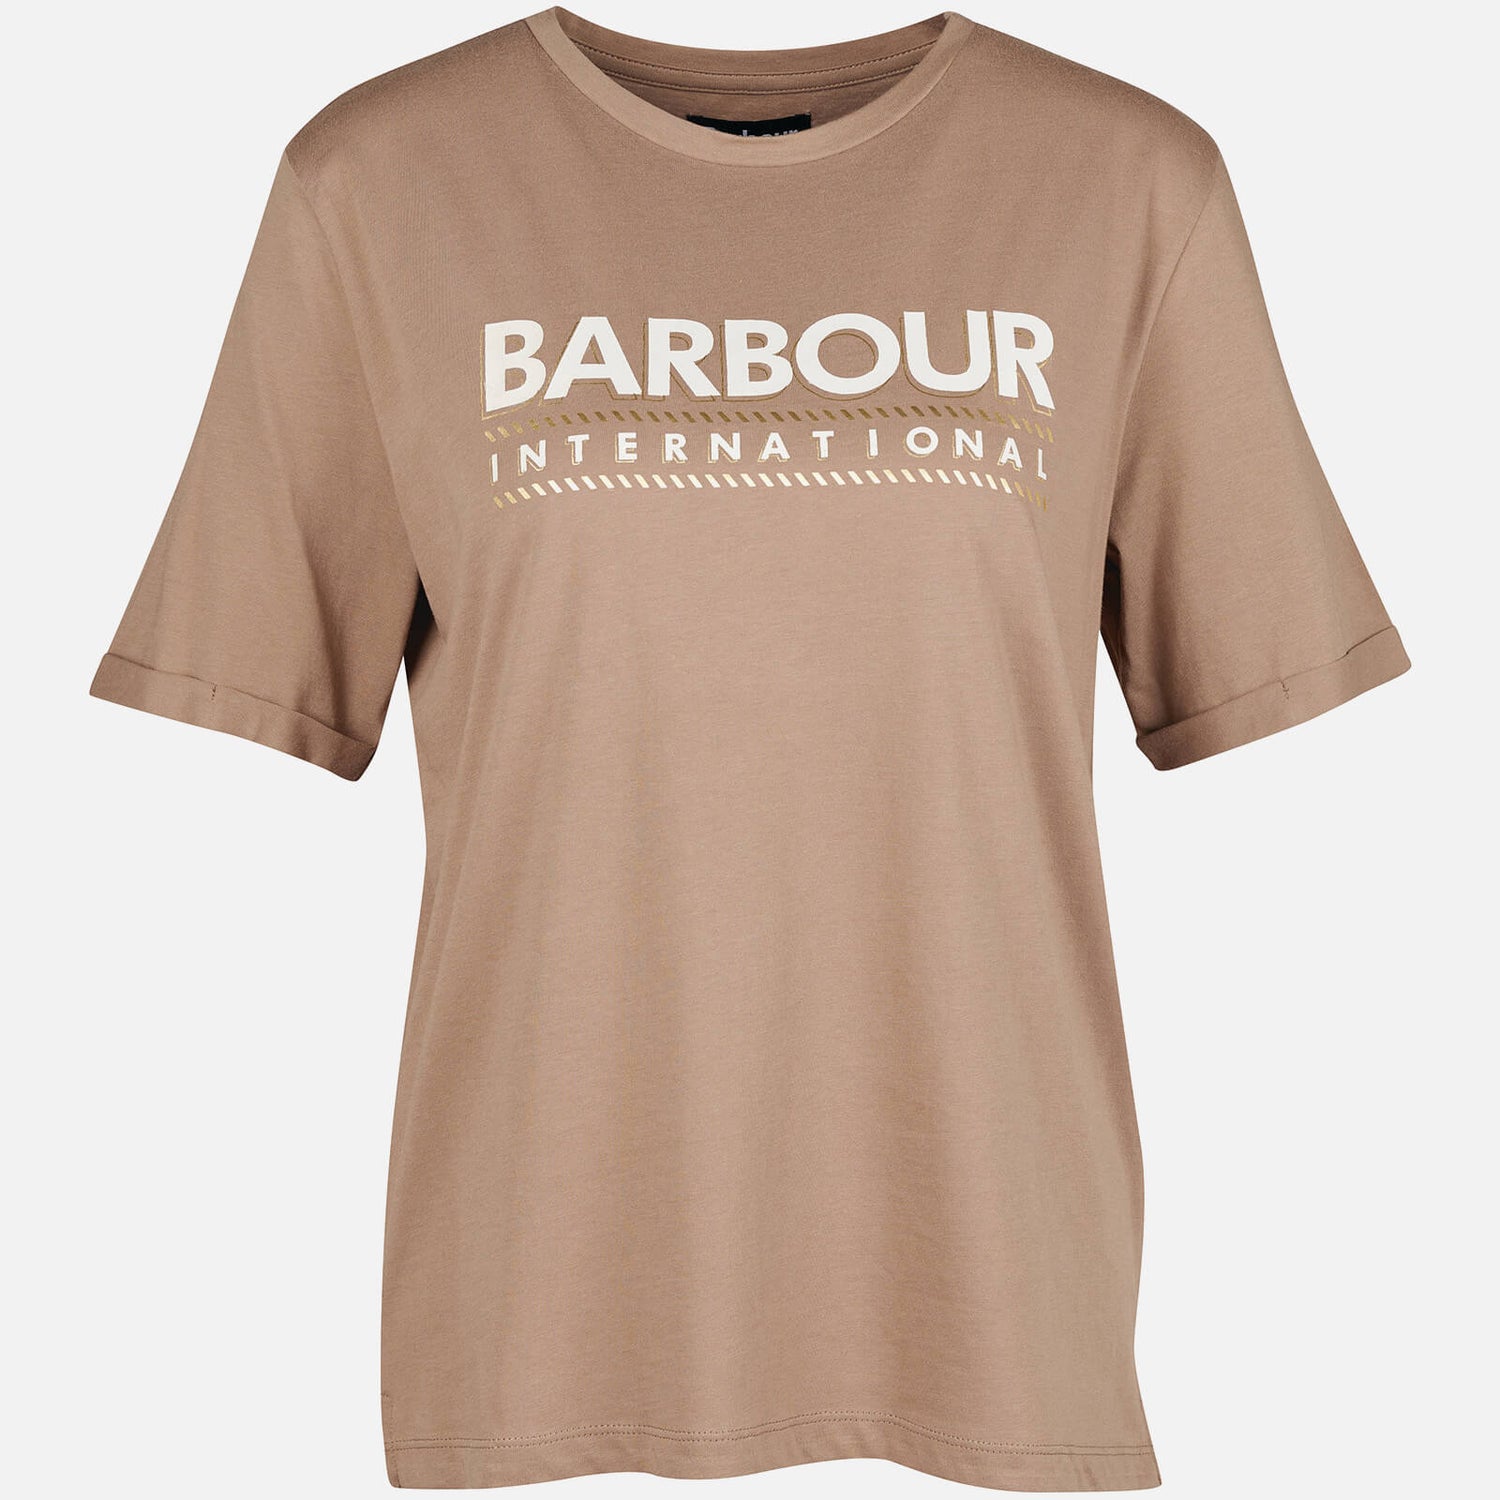 Barbour International B.Intl Monaco Cotton-Jersey Top - UK 8